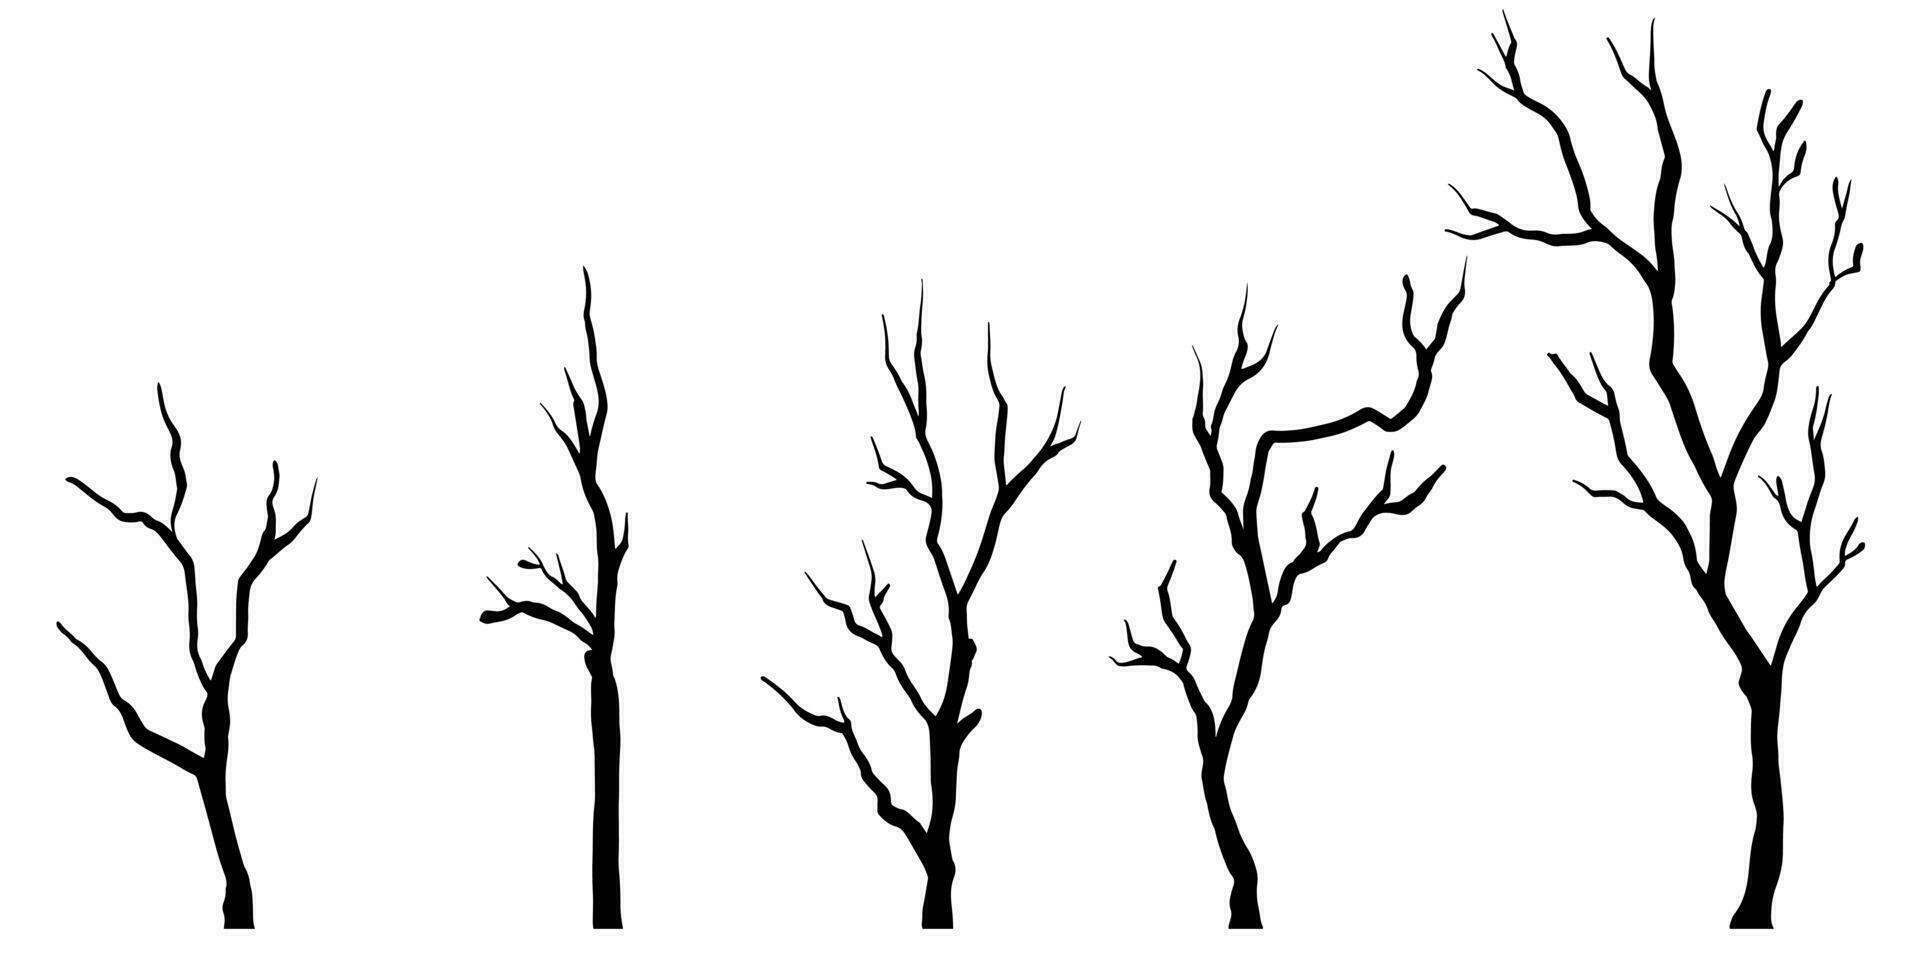 griffonnage esquisser style de nu des arbres silhouettes dessin animé main tiré illustration pour concept conception. vecteur